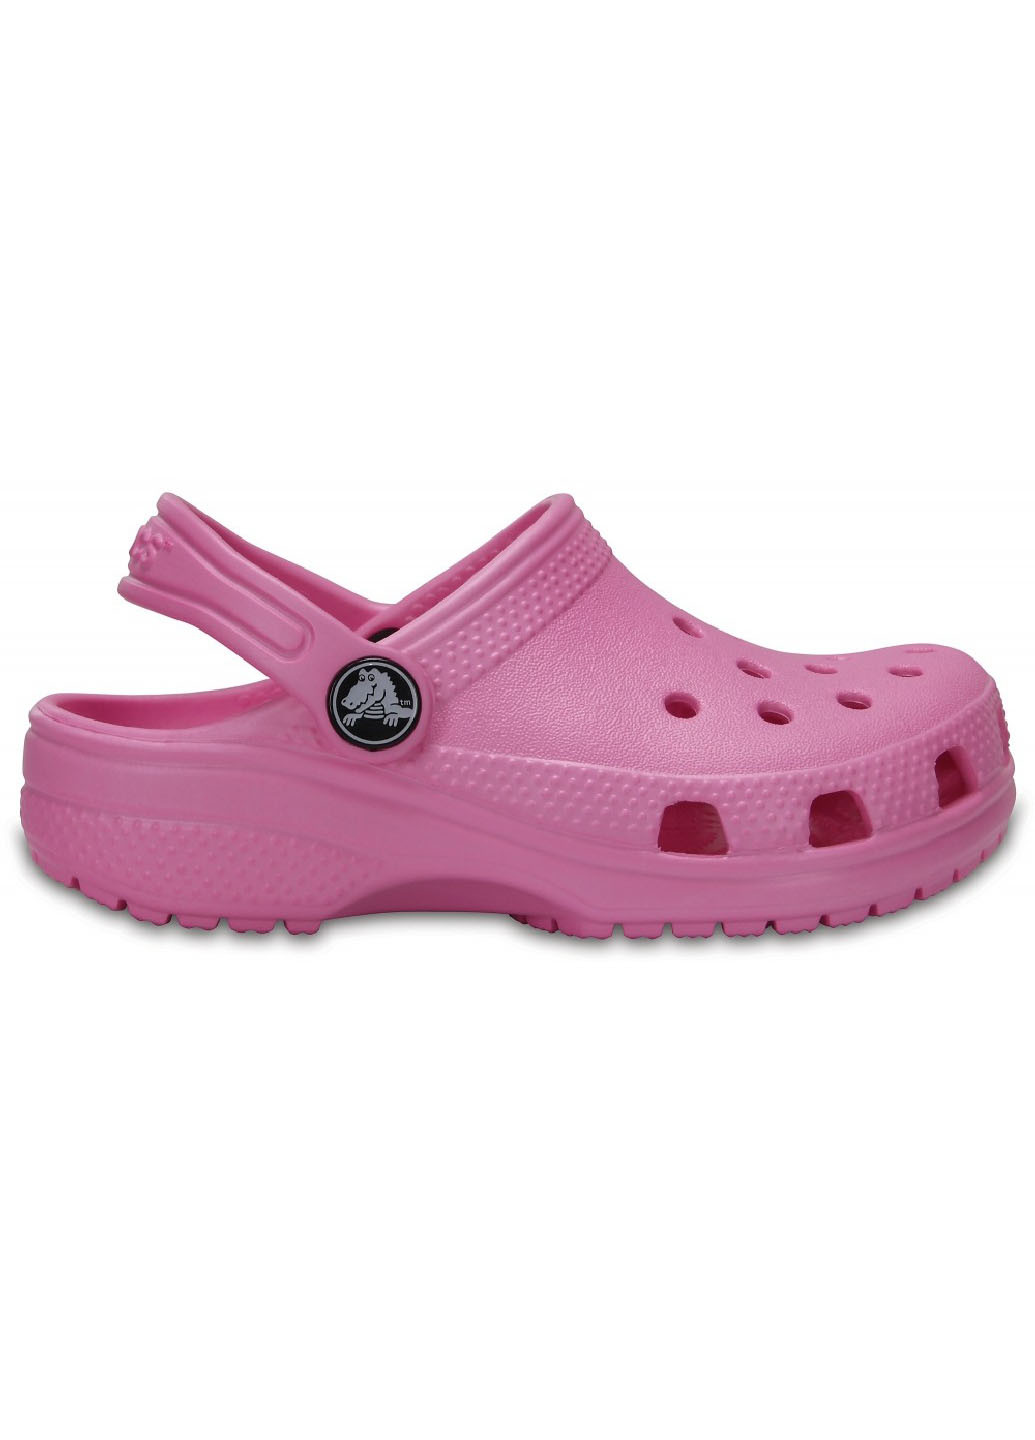 Розовые детям:сабо Crocs